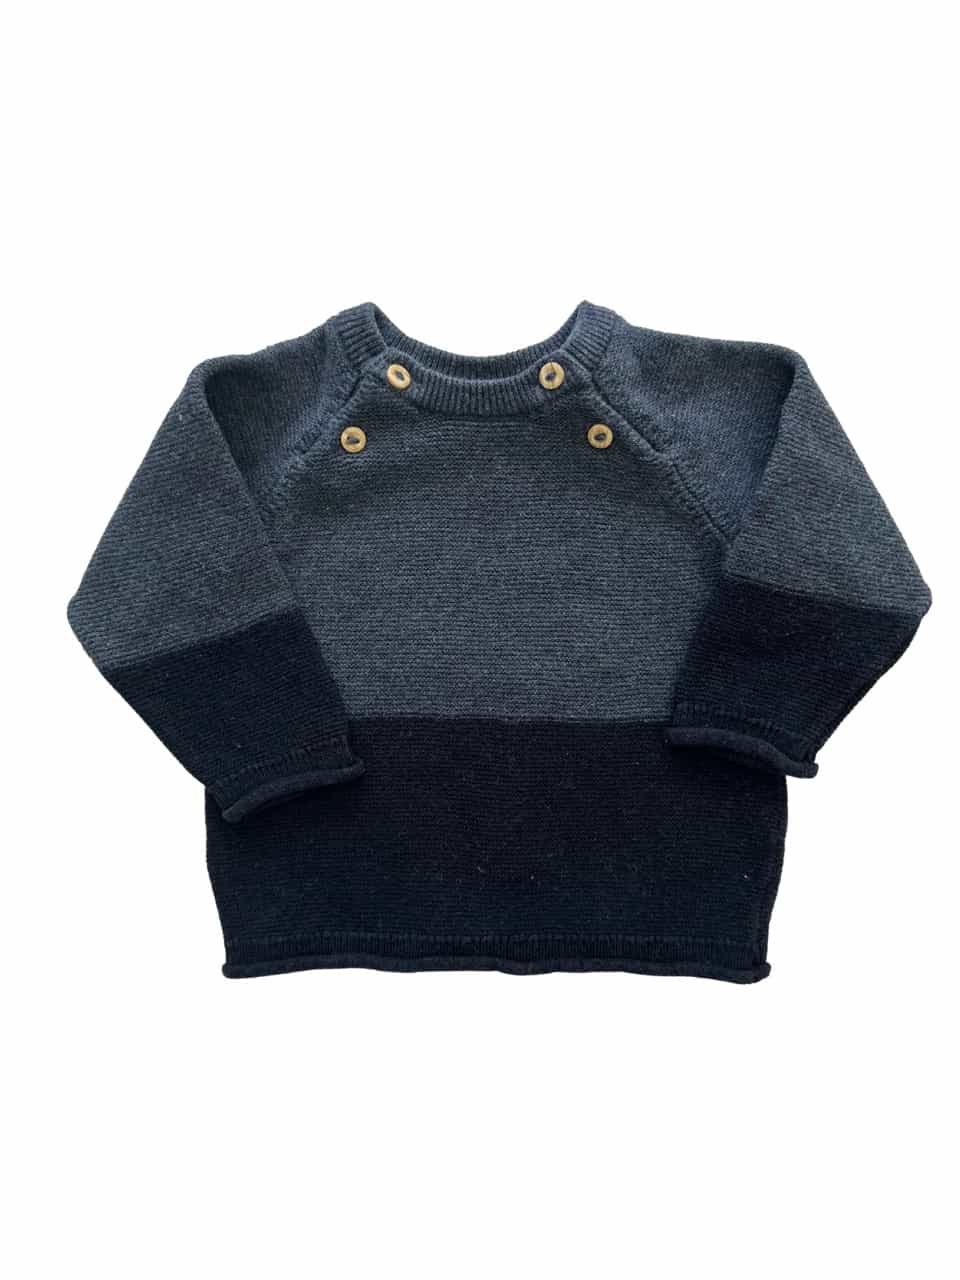 gebrauchte kinderkleidung pullover grau schwarz